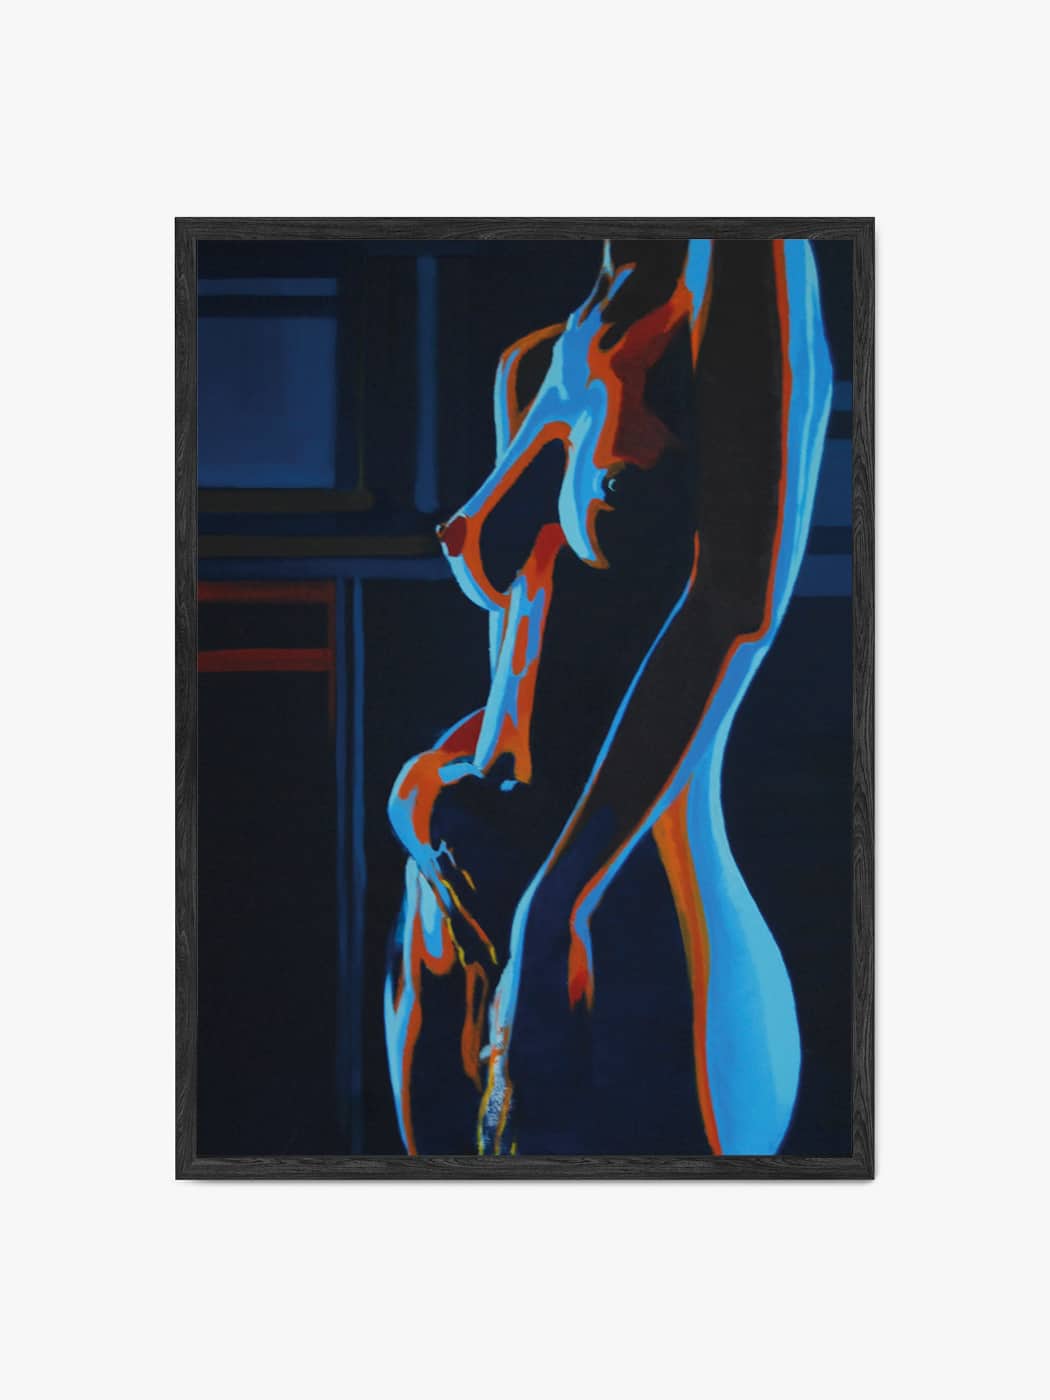 Grafika przedstawiająca akt kobiecy autorstwa Marty Kozłowskiej w formie obrazu akustycznego dźwiękochłonnego w czarnej ramie